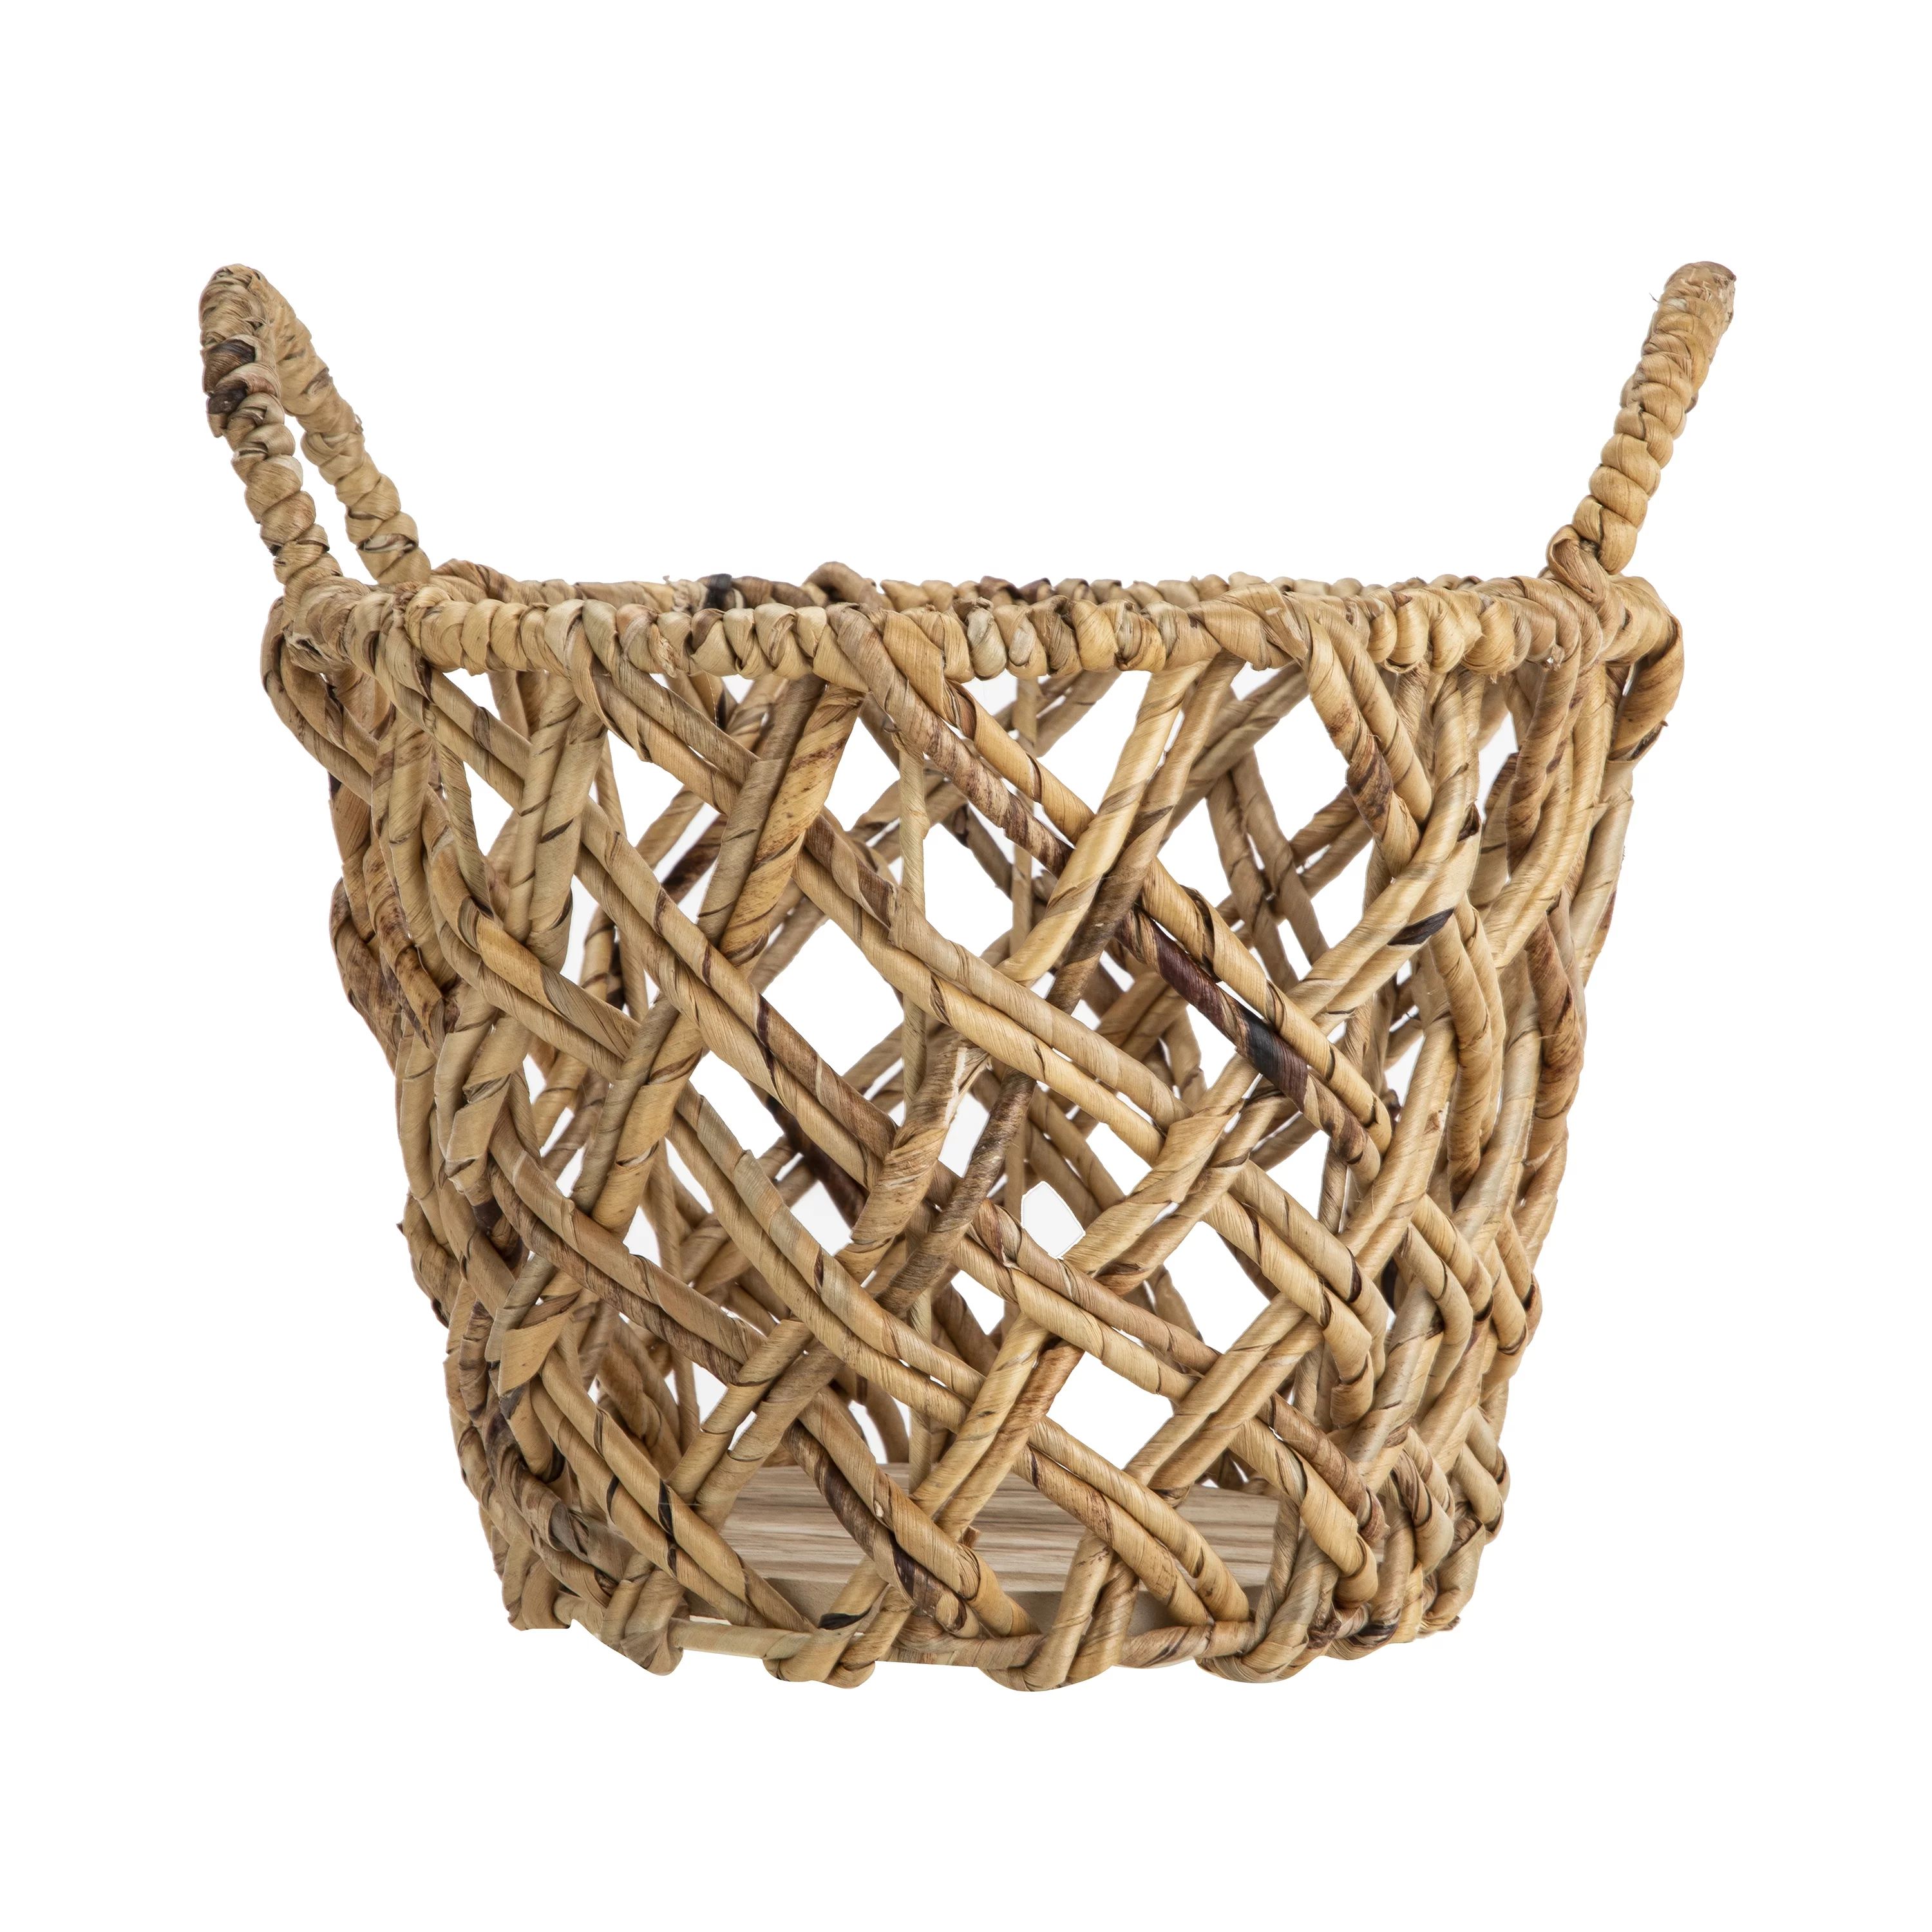 Mainstays Water Hyacinth Round Decorative Storage Basket with Handles, 9.84"D x 9.44"H | Walmart (US)